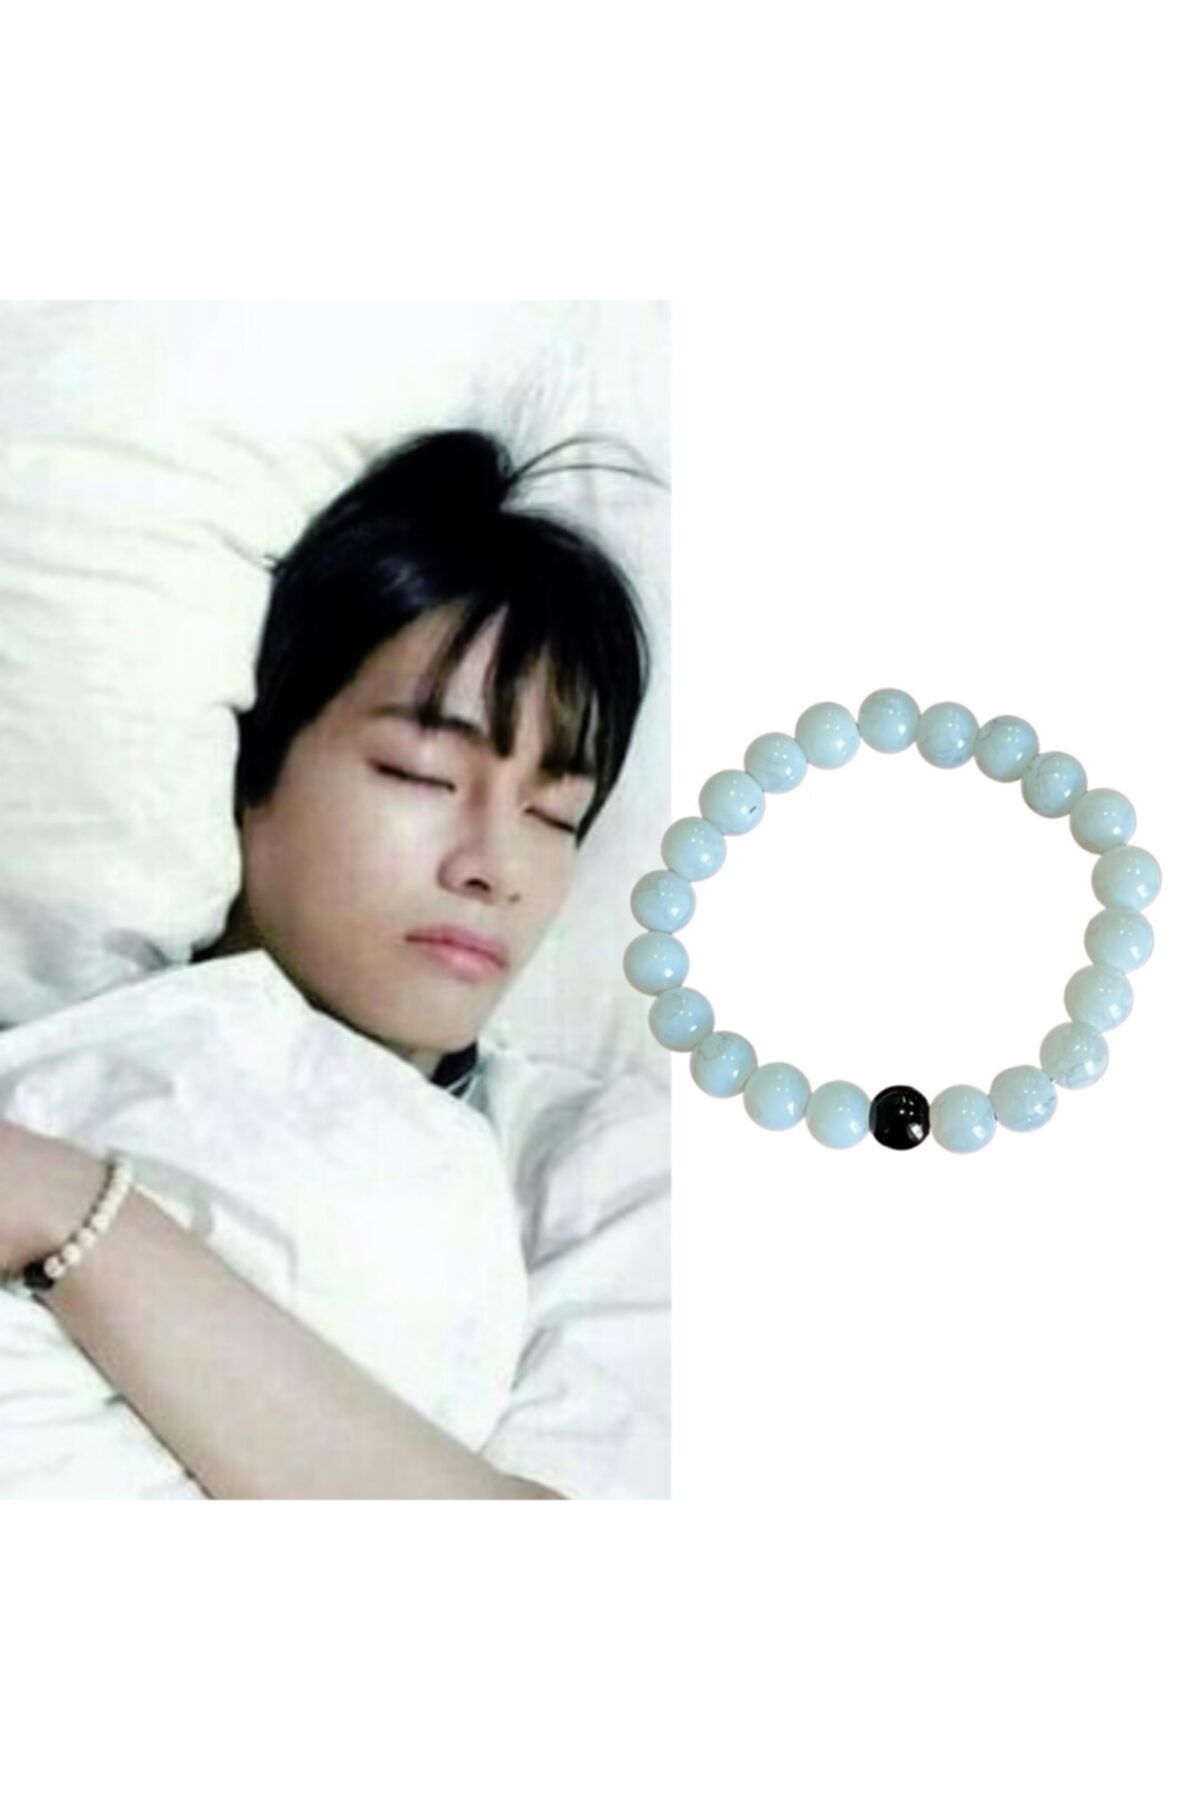 BTS V Kim Taehyung Inspired Bracelets. BTS V Red Beaded Bracelet. Red  Beaded Bracelet. BTS Army Bracelet. Trendy Bracelet. Popular Bracelet - Etsy